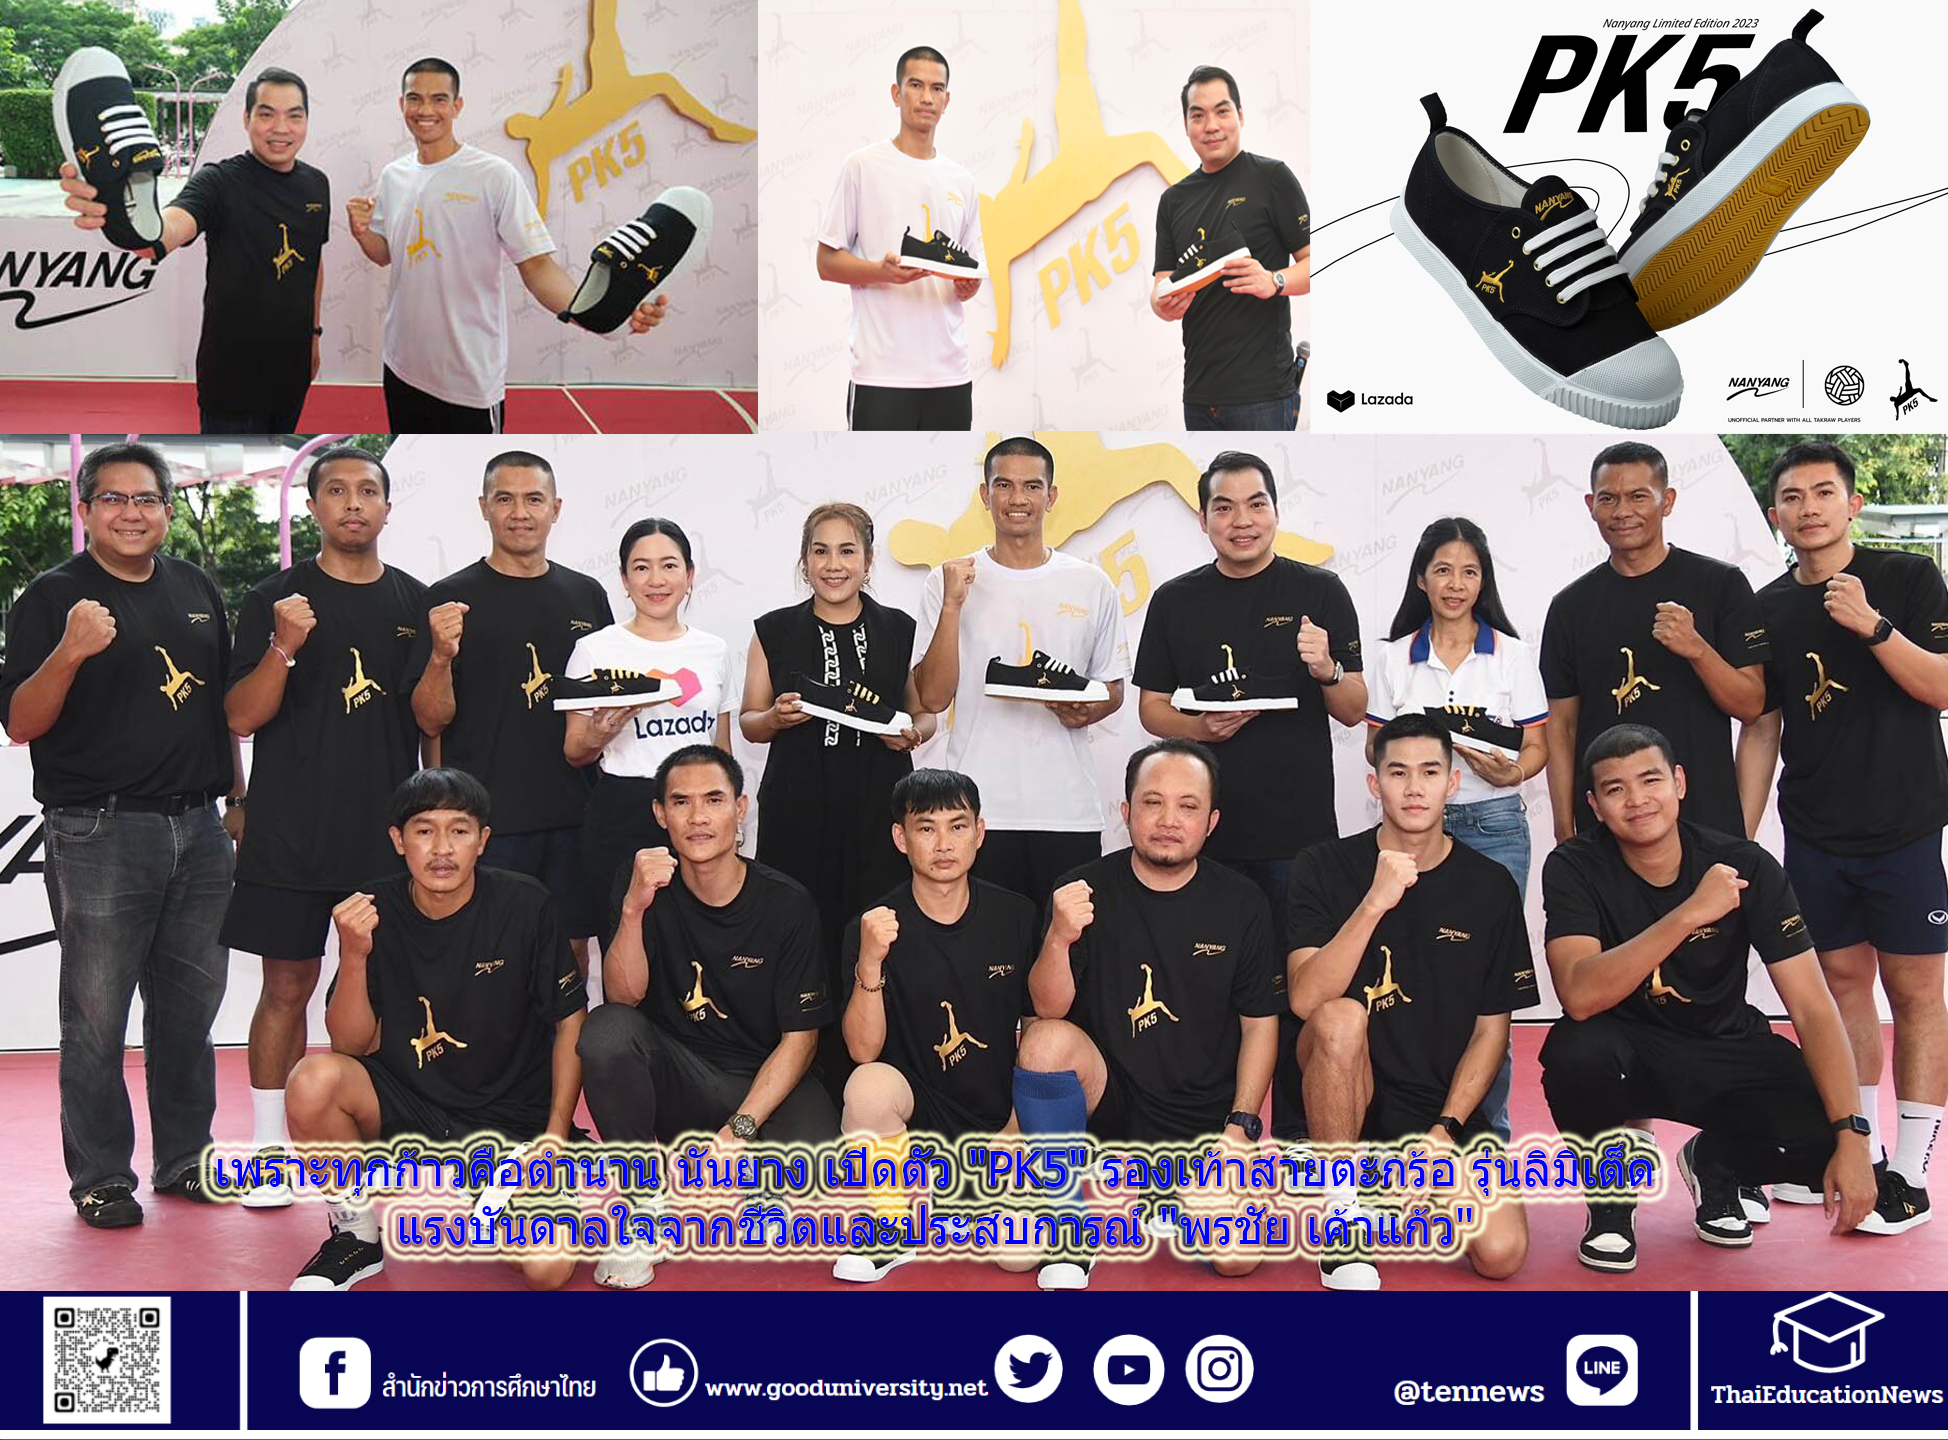 นันยาง เปิดตัว “PK5” รองเท้าสายตะกร้อ รุ่นลิมิเต็ด แรงบันดาลใจจากชีวิตและประสบการณ์ “พรชัย เค้าแก้ว” อีกหนึ่งตำนานรองเท้านักเรียนไทย